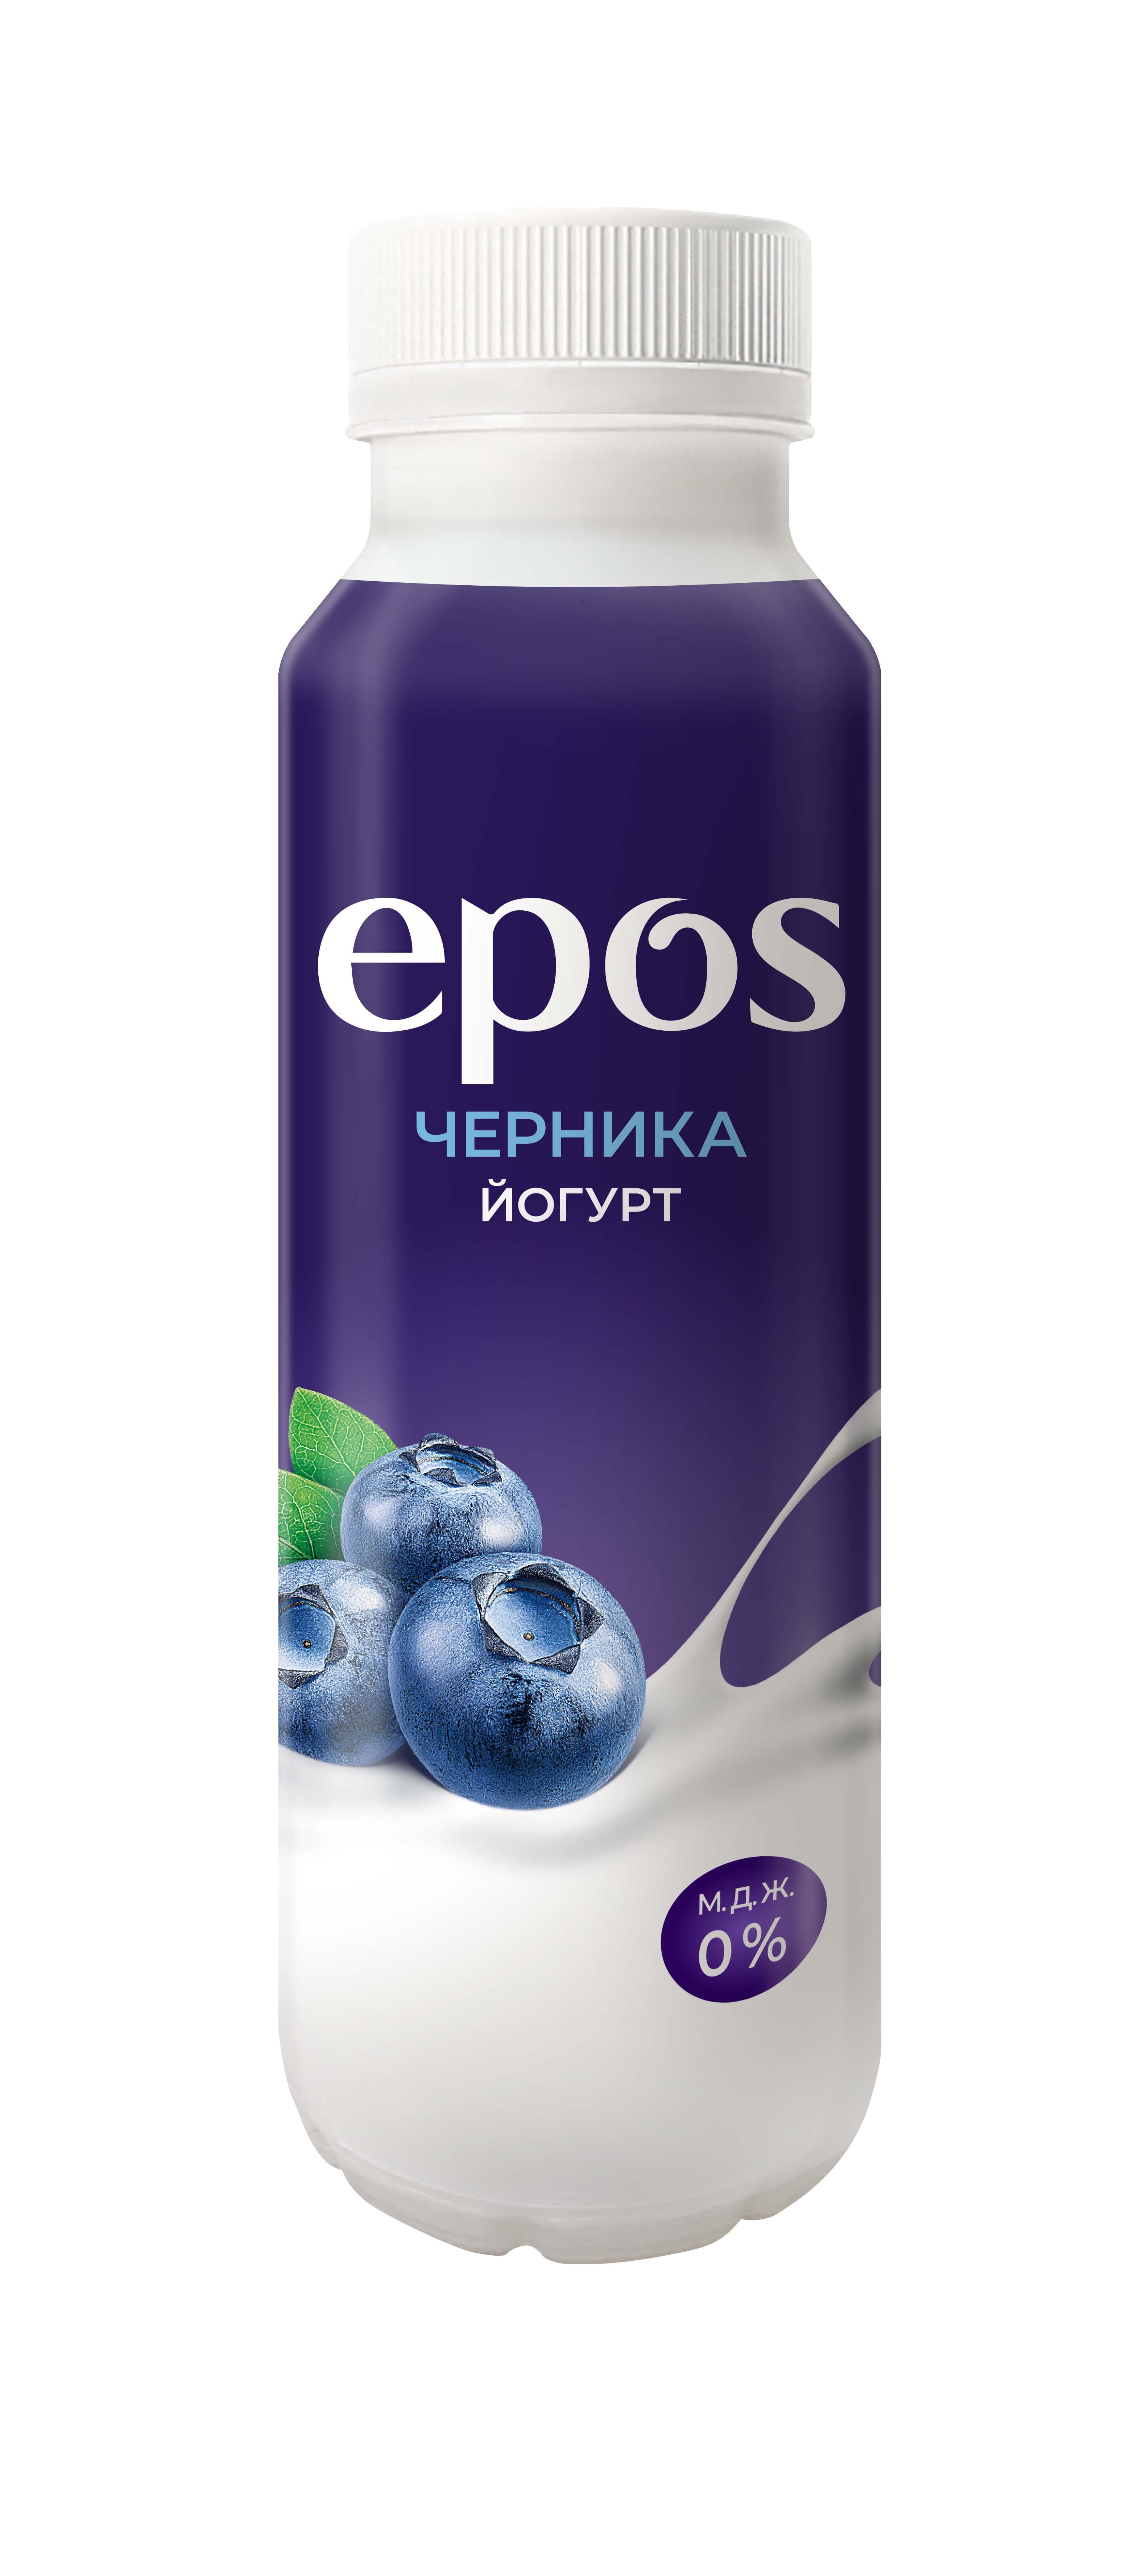 Питьевой йогурт Epos с черникой обезжиренный БЗМЖ 250 г